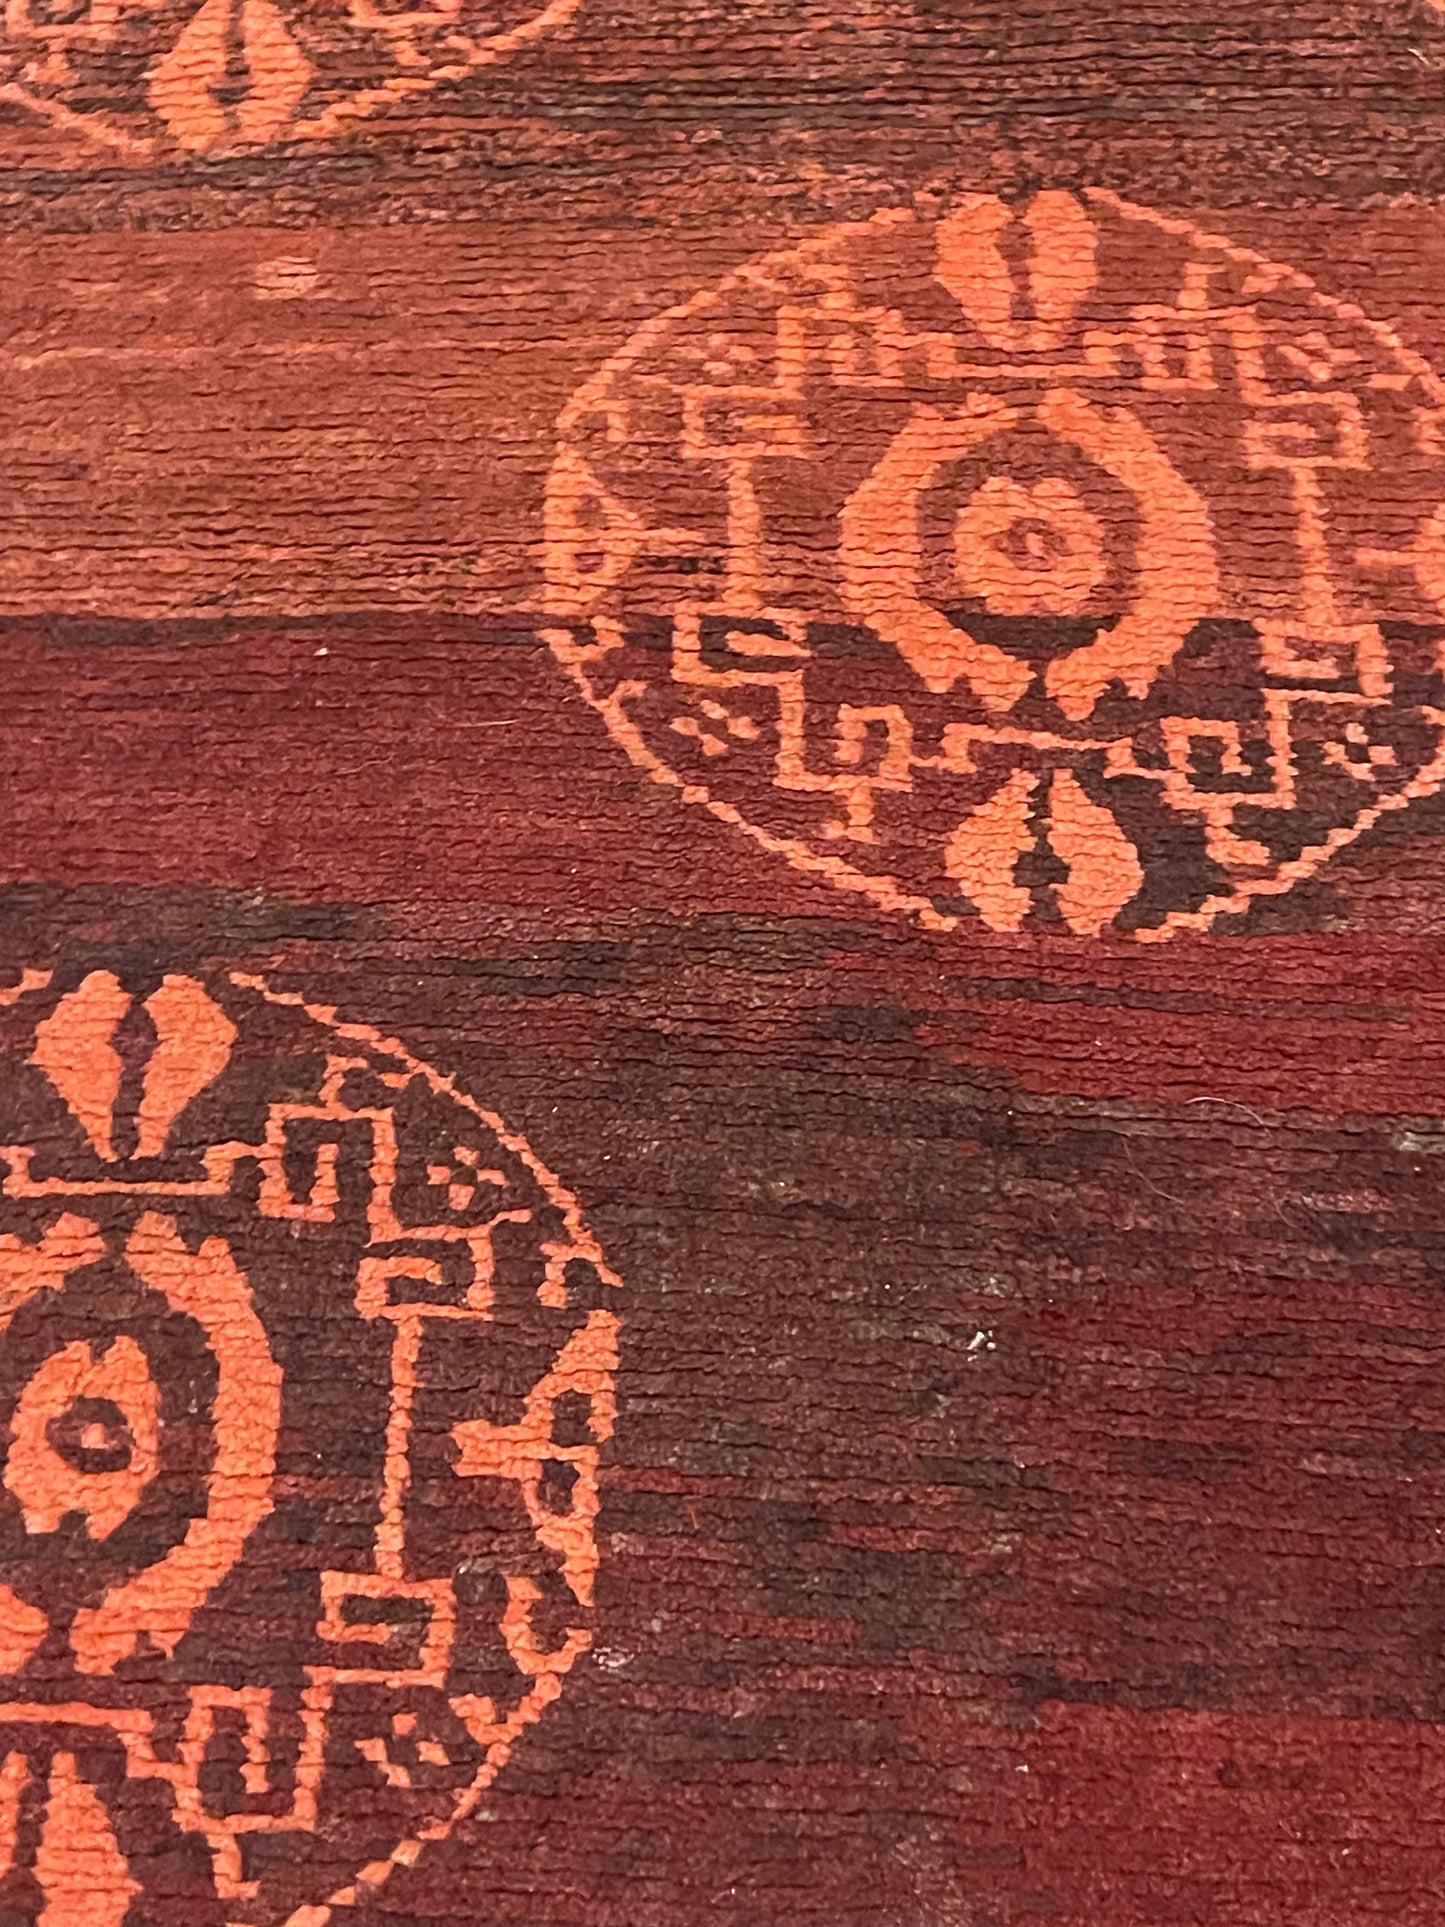 An antique Tibetan rug with coin motifs